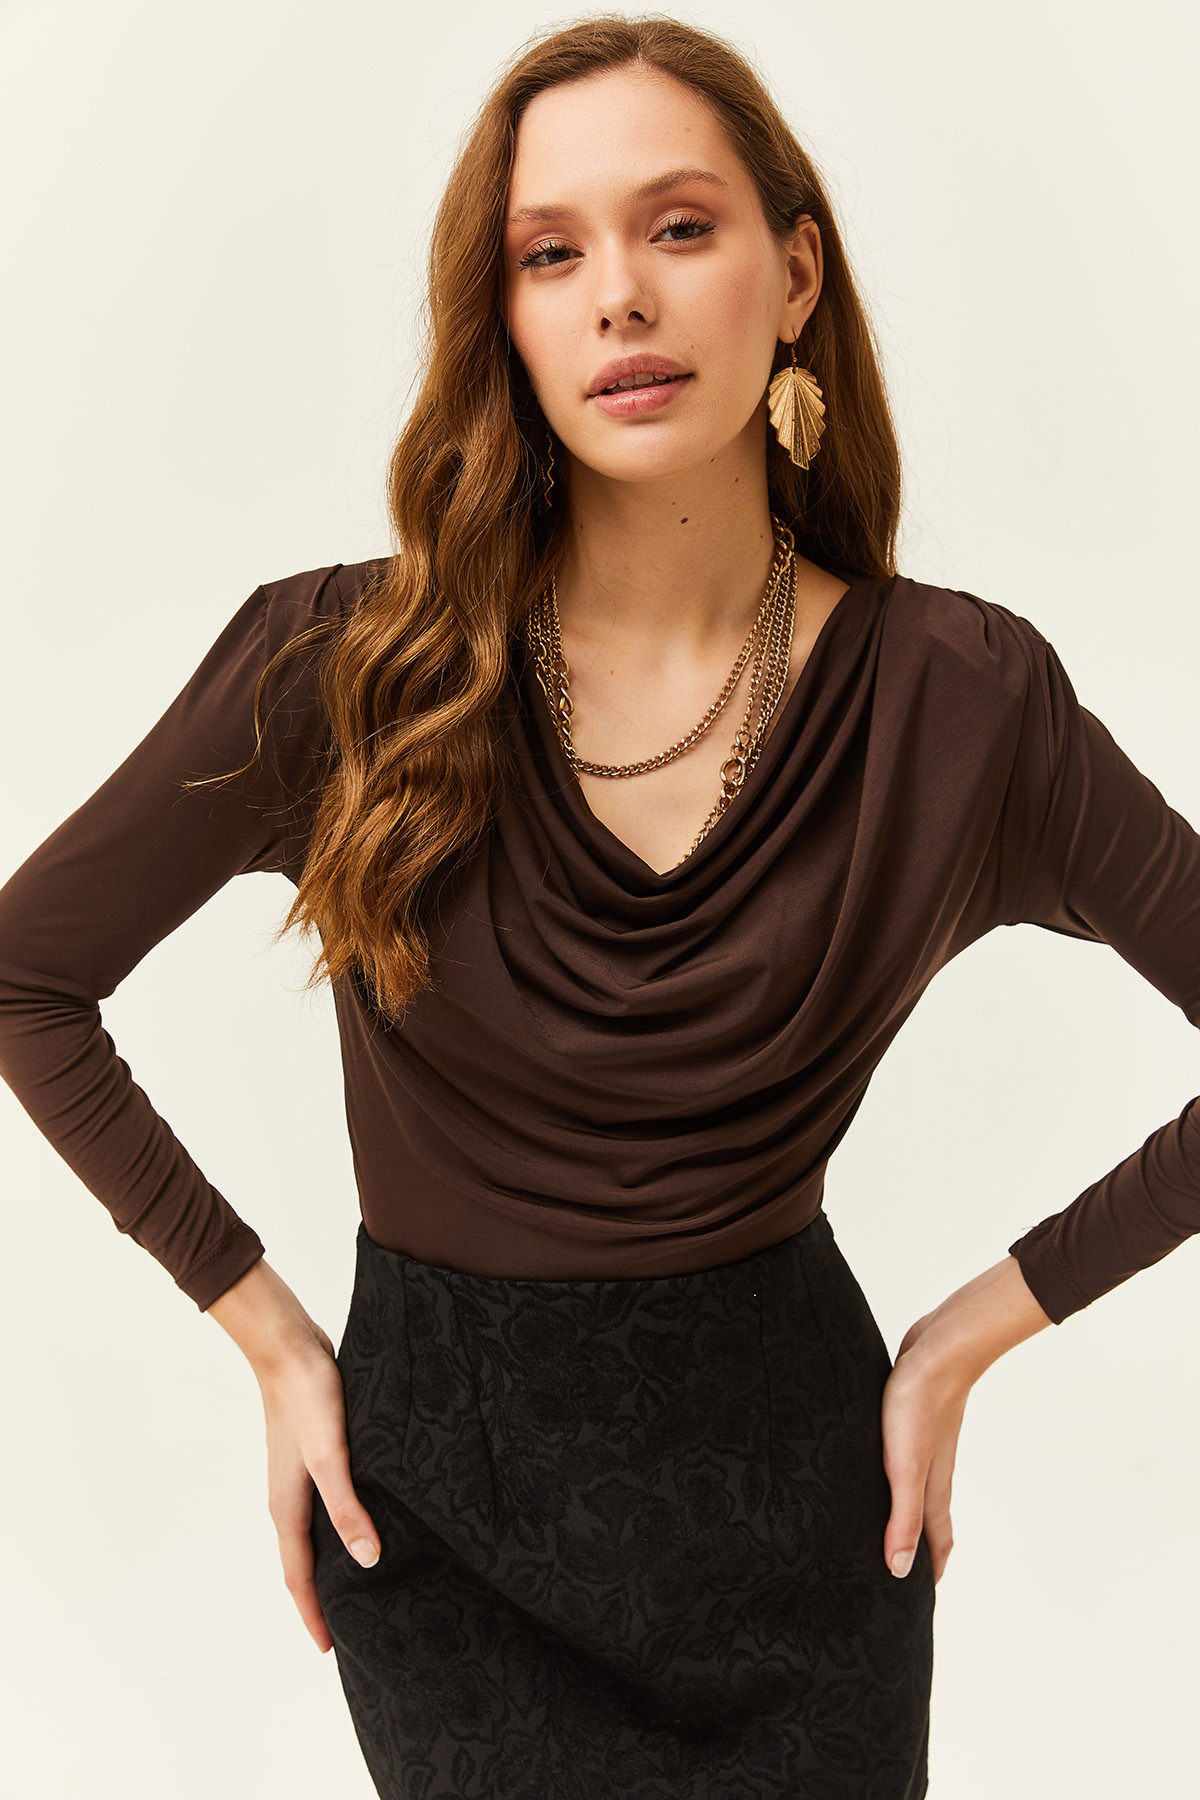 Женская горько-коричневая блузка со складками и воротником-стойкой Olalook, коричневый